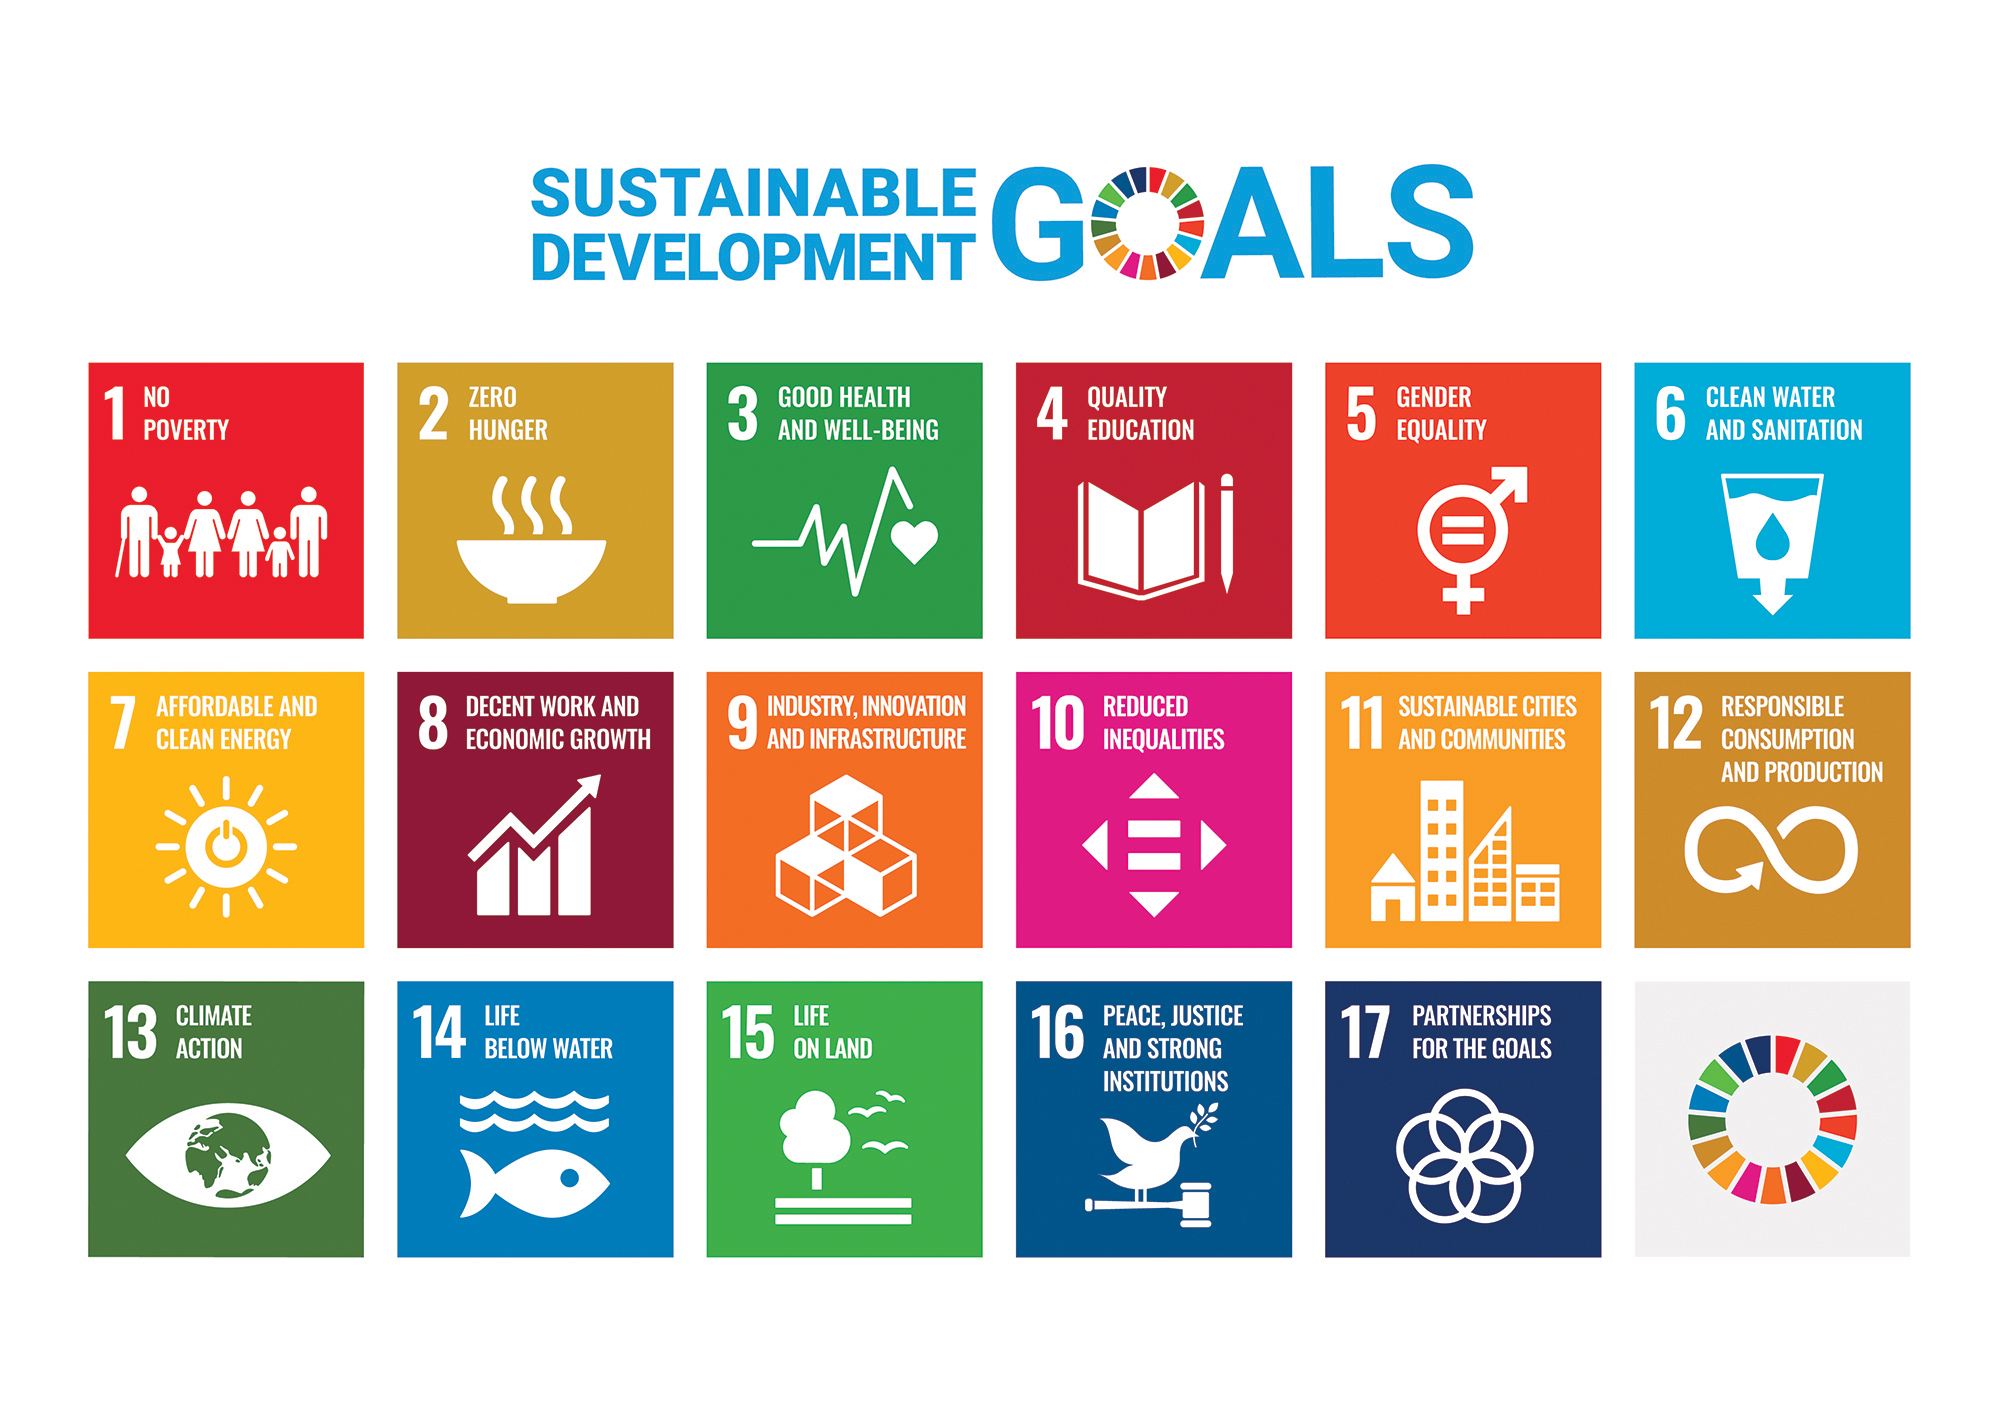 https://images.nationalgeographic.org/image/upload/v1638892148/EducationHub/photos/sustainable-development-goals.jpg